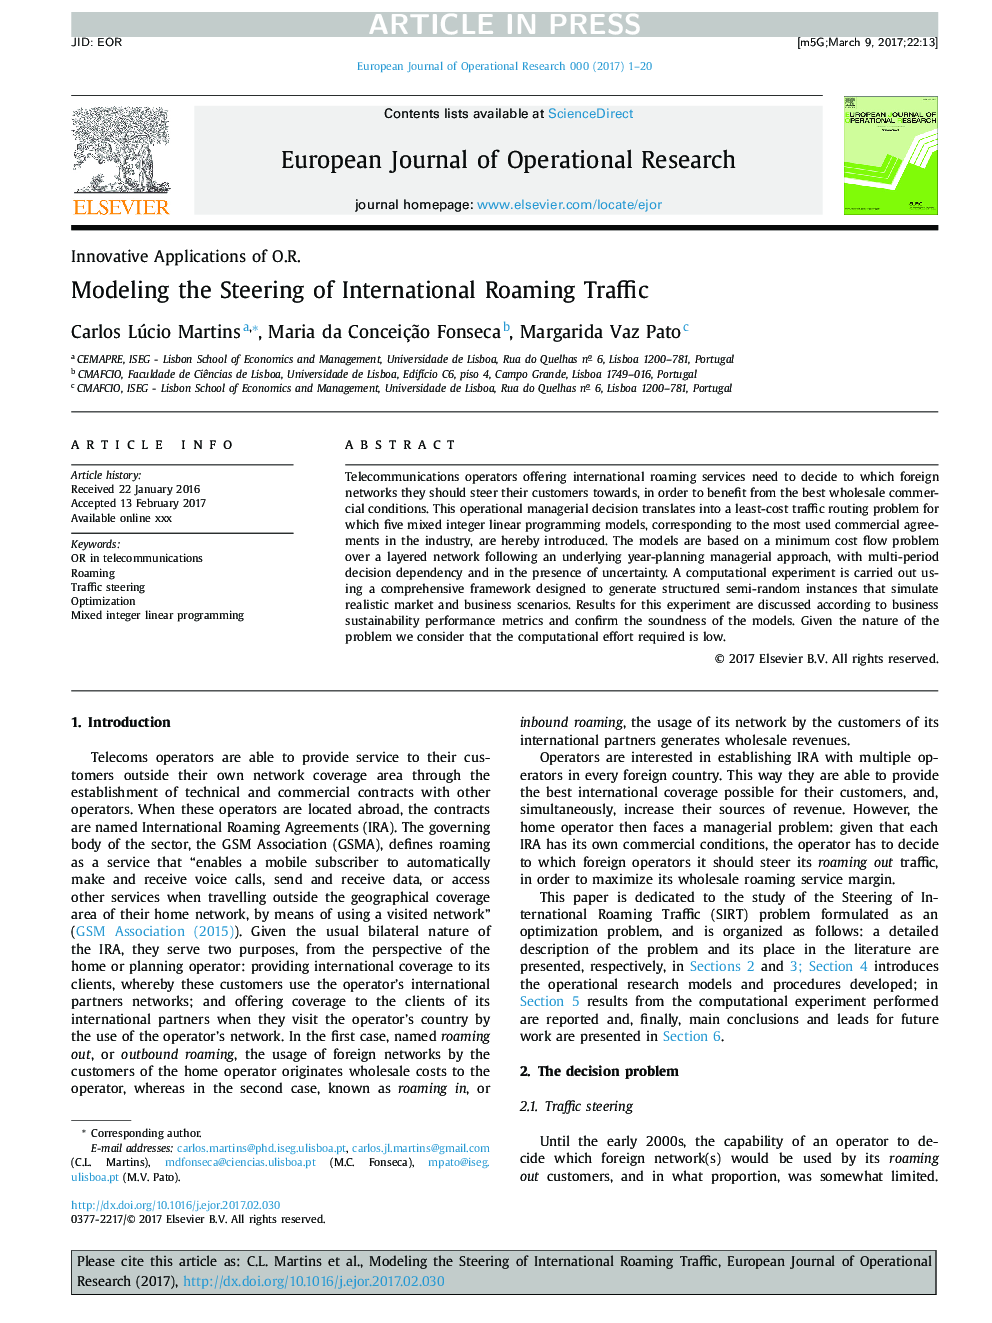 مدل سازی مسیریابی بین المللی ترافیک رومینگ 